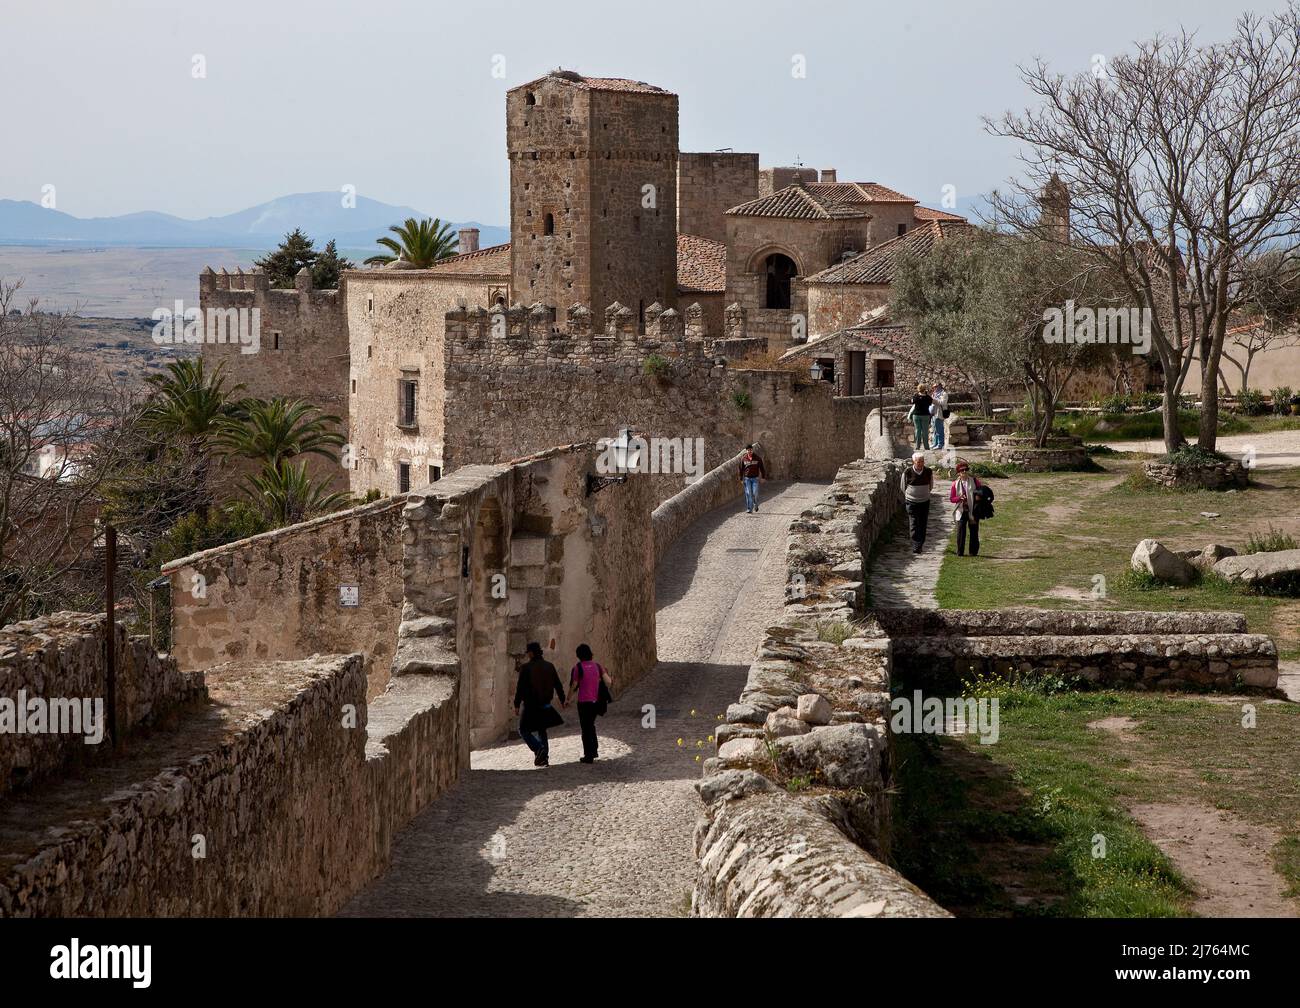 Blick aus Richtung Burg auf profane und sakrale Bauten mit Personen Foto Stock